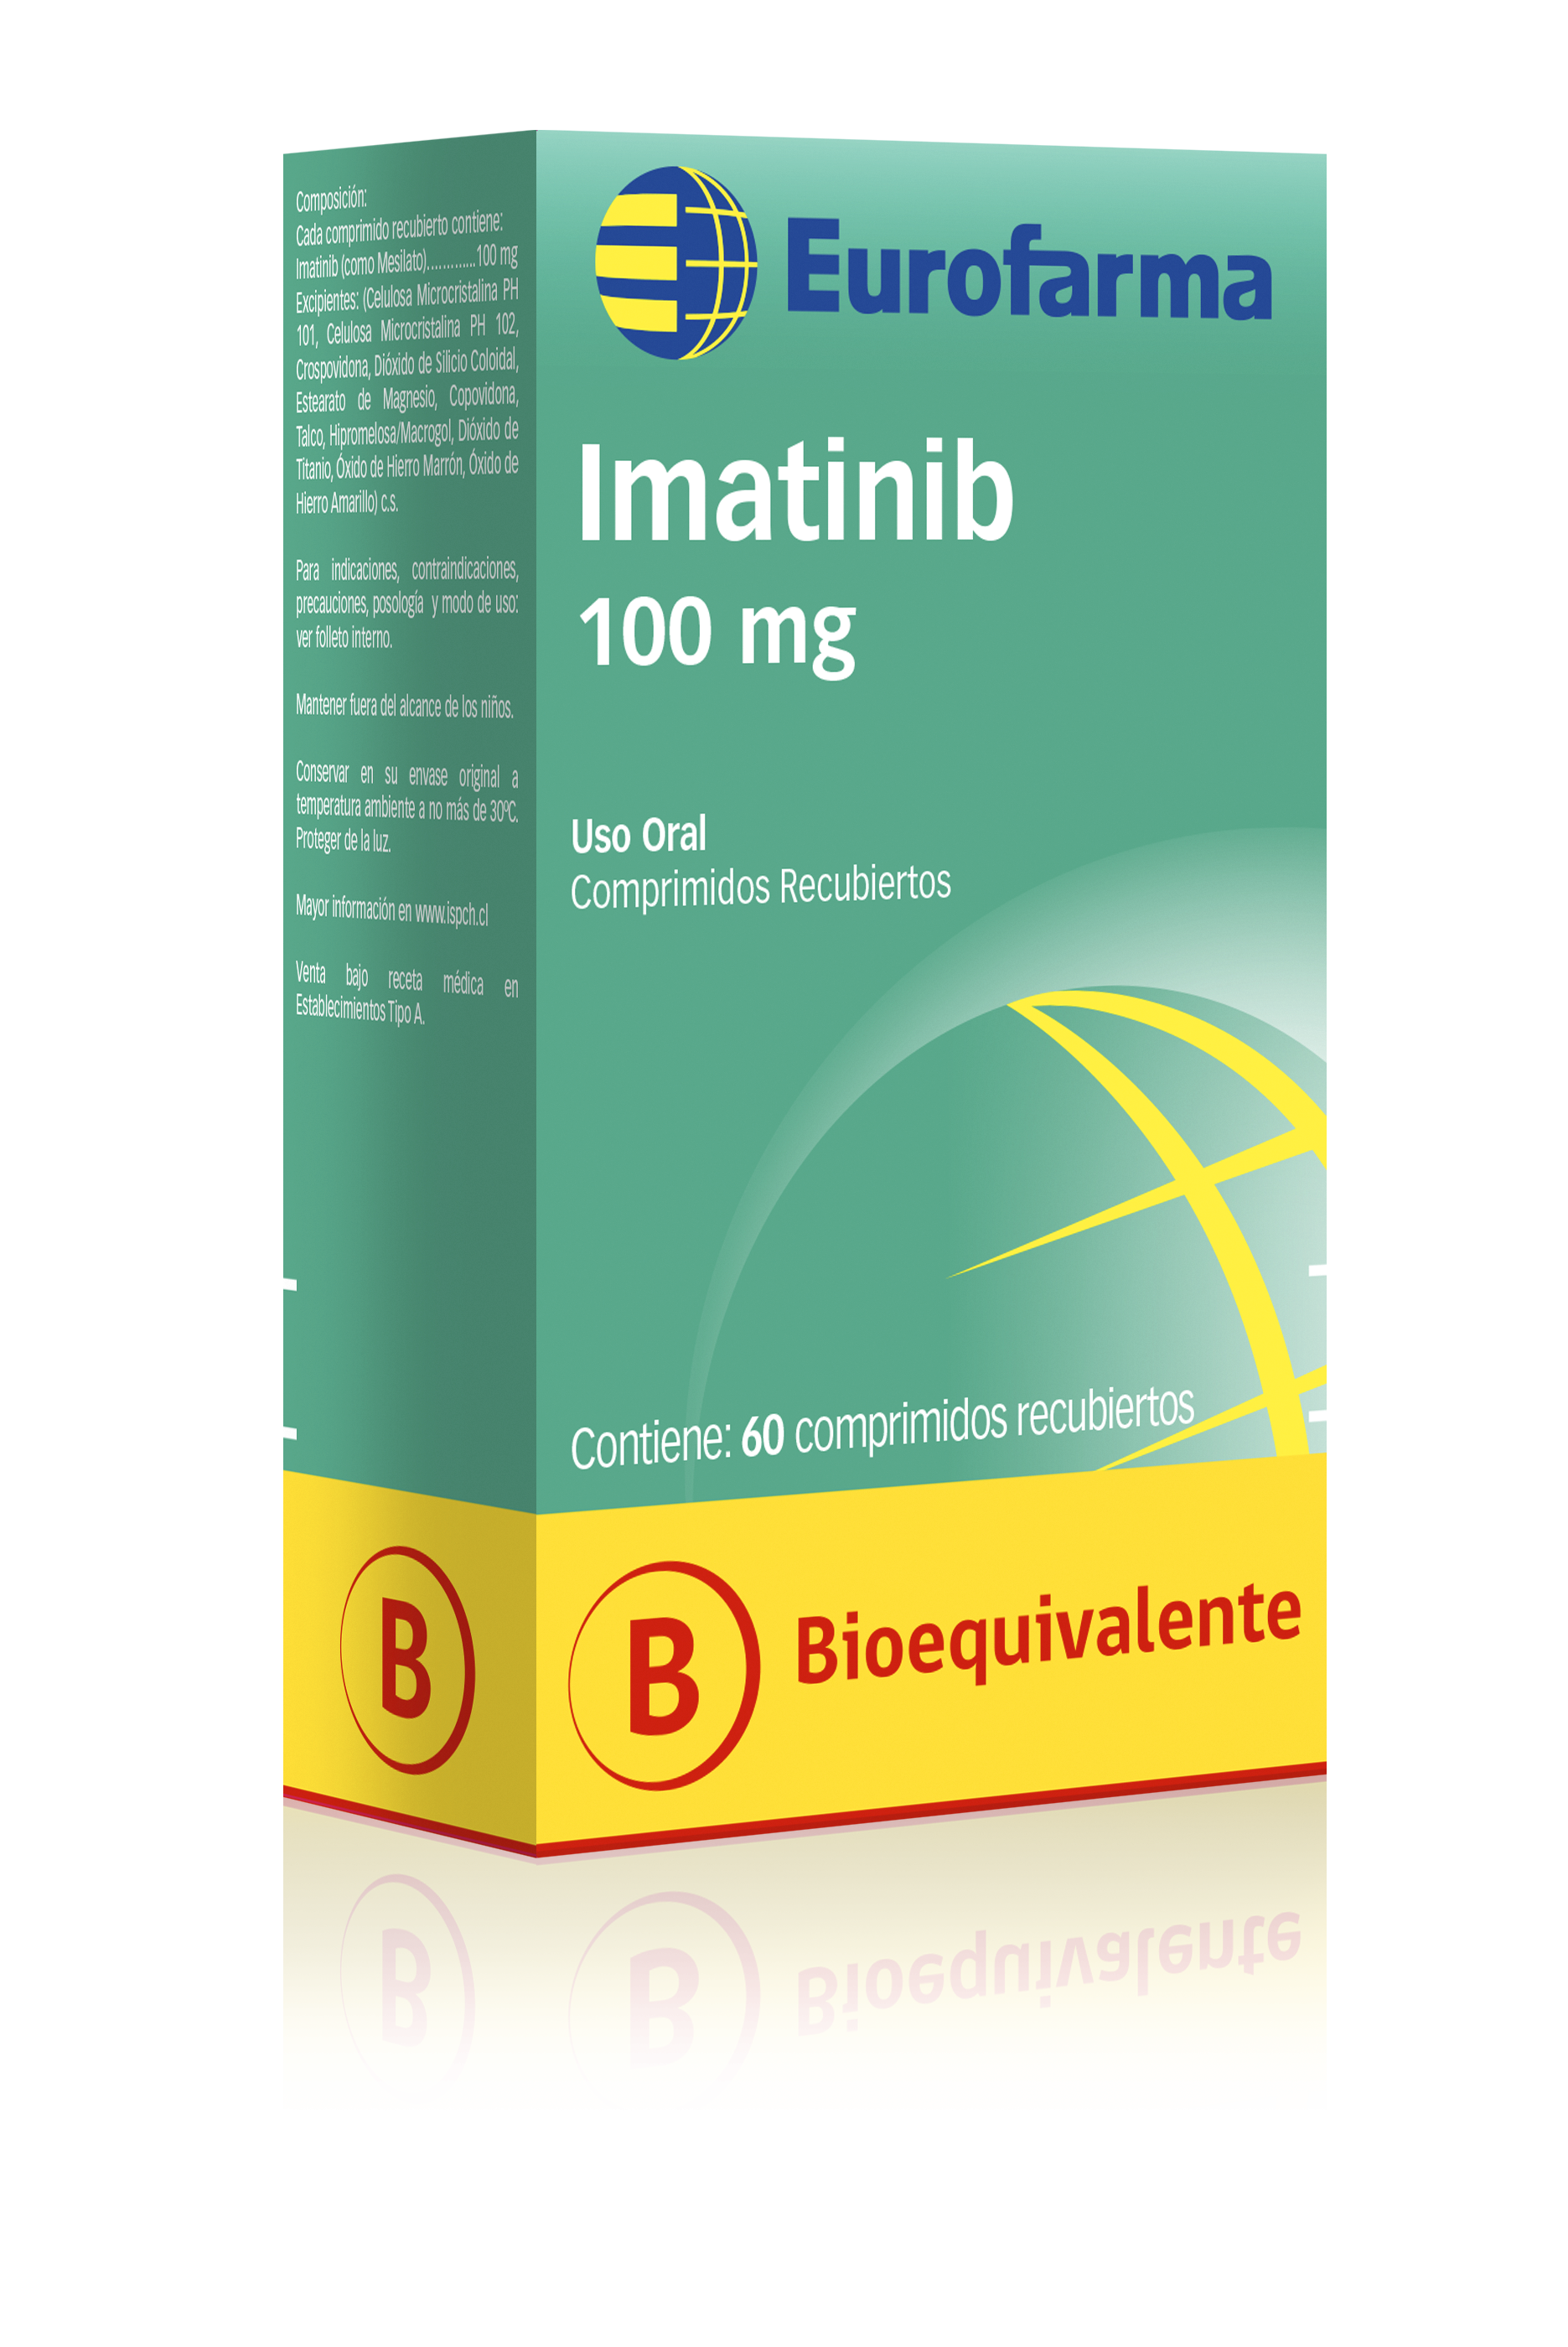 Imatinib 100 mg. comprimidos recubiertos bioequivalente